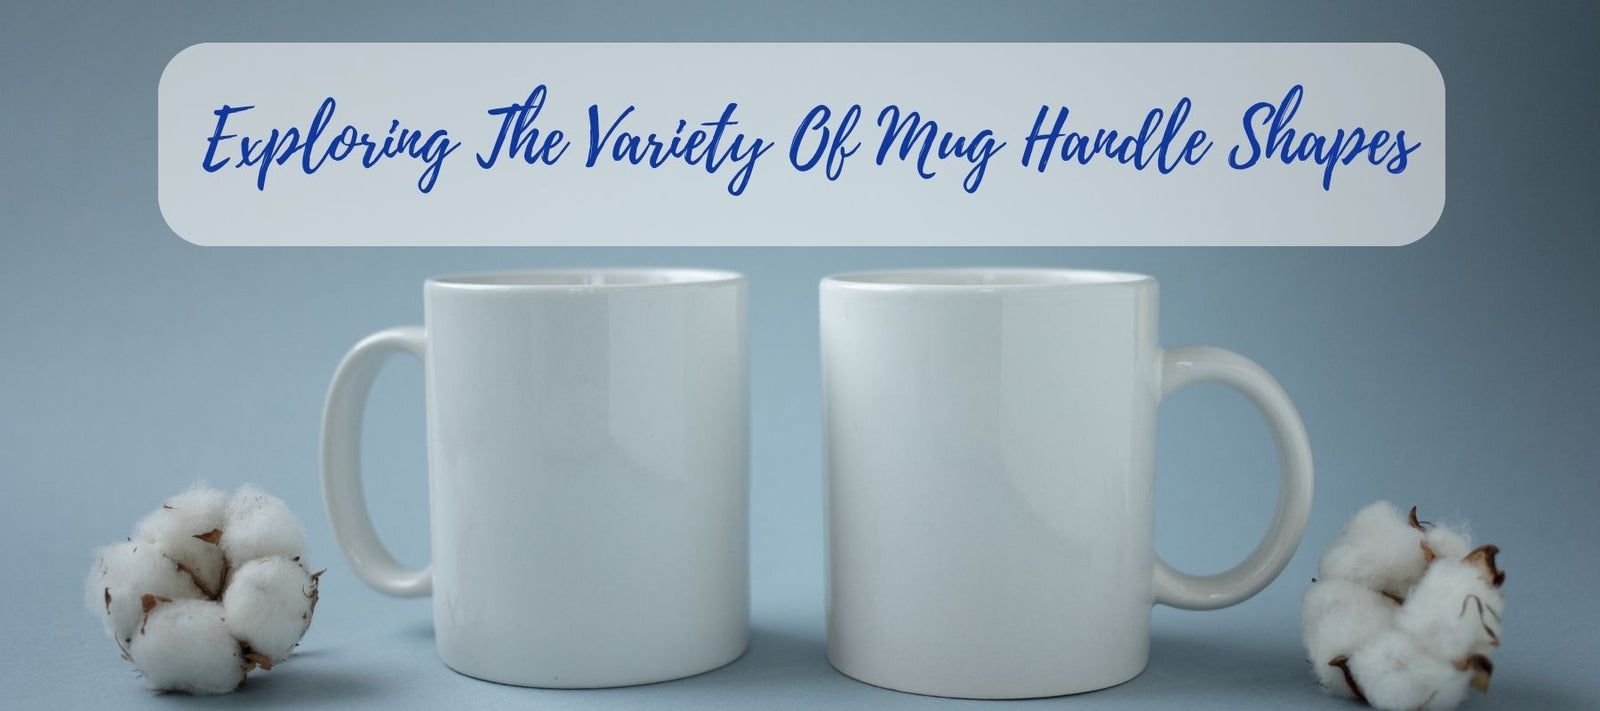 Aesthetic Mug - Vintage Mug - Custom Mug - Vintage Antique Aesthetic Mug -  Meaningful Gifts For Family, Couple, Wife